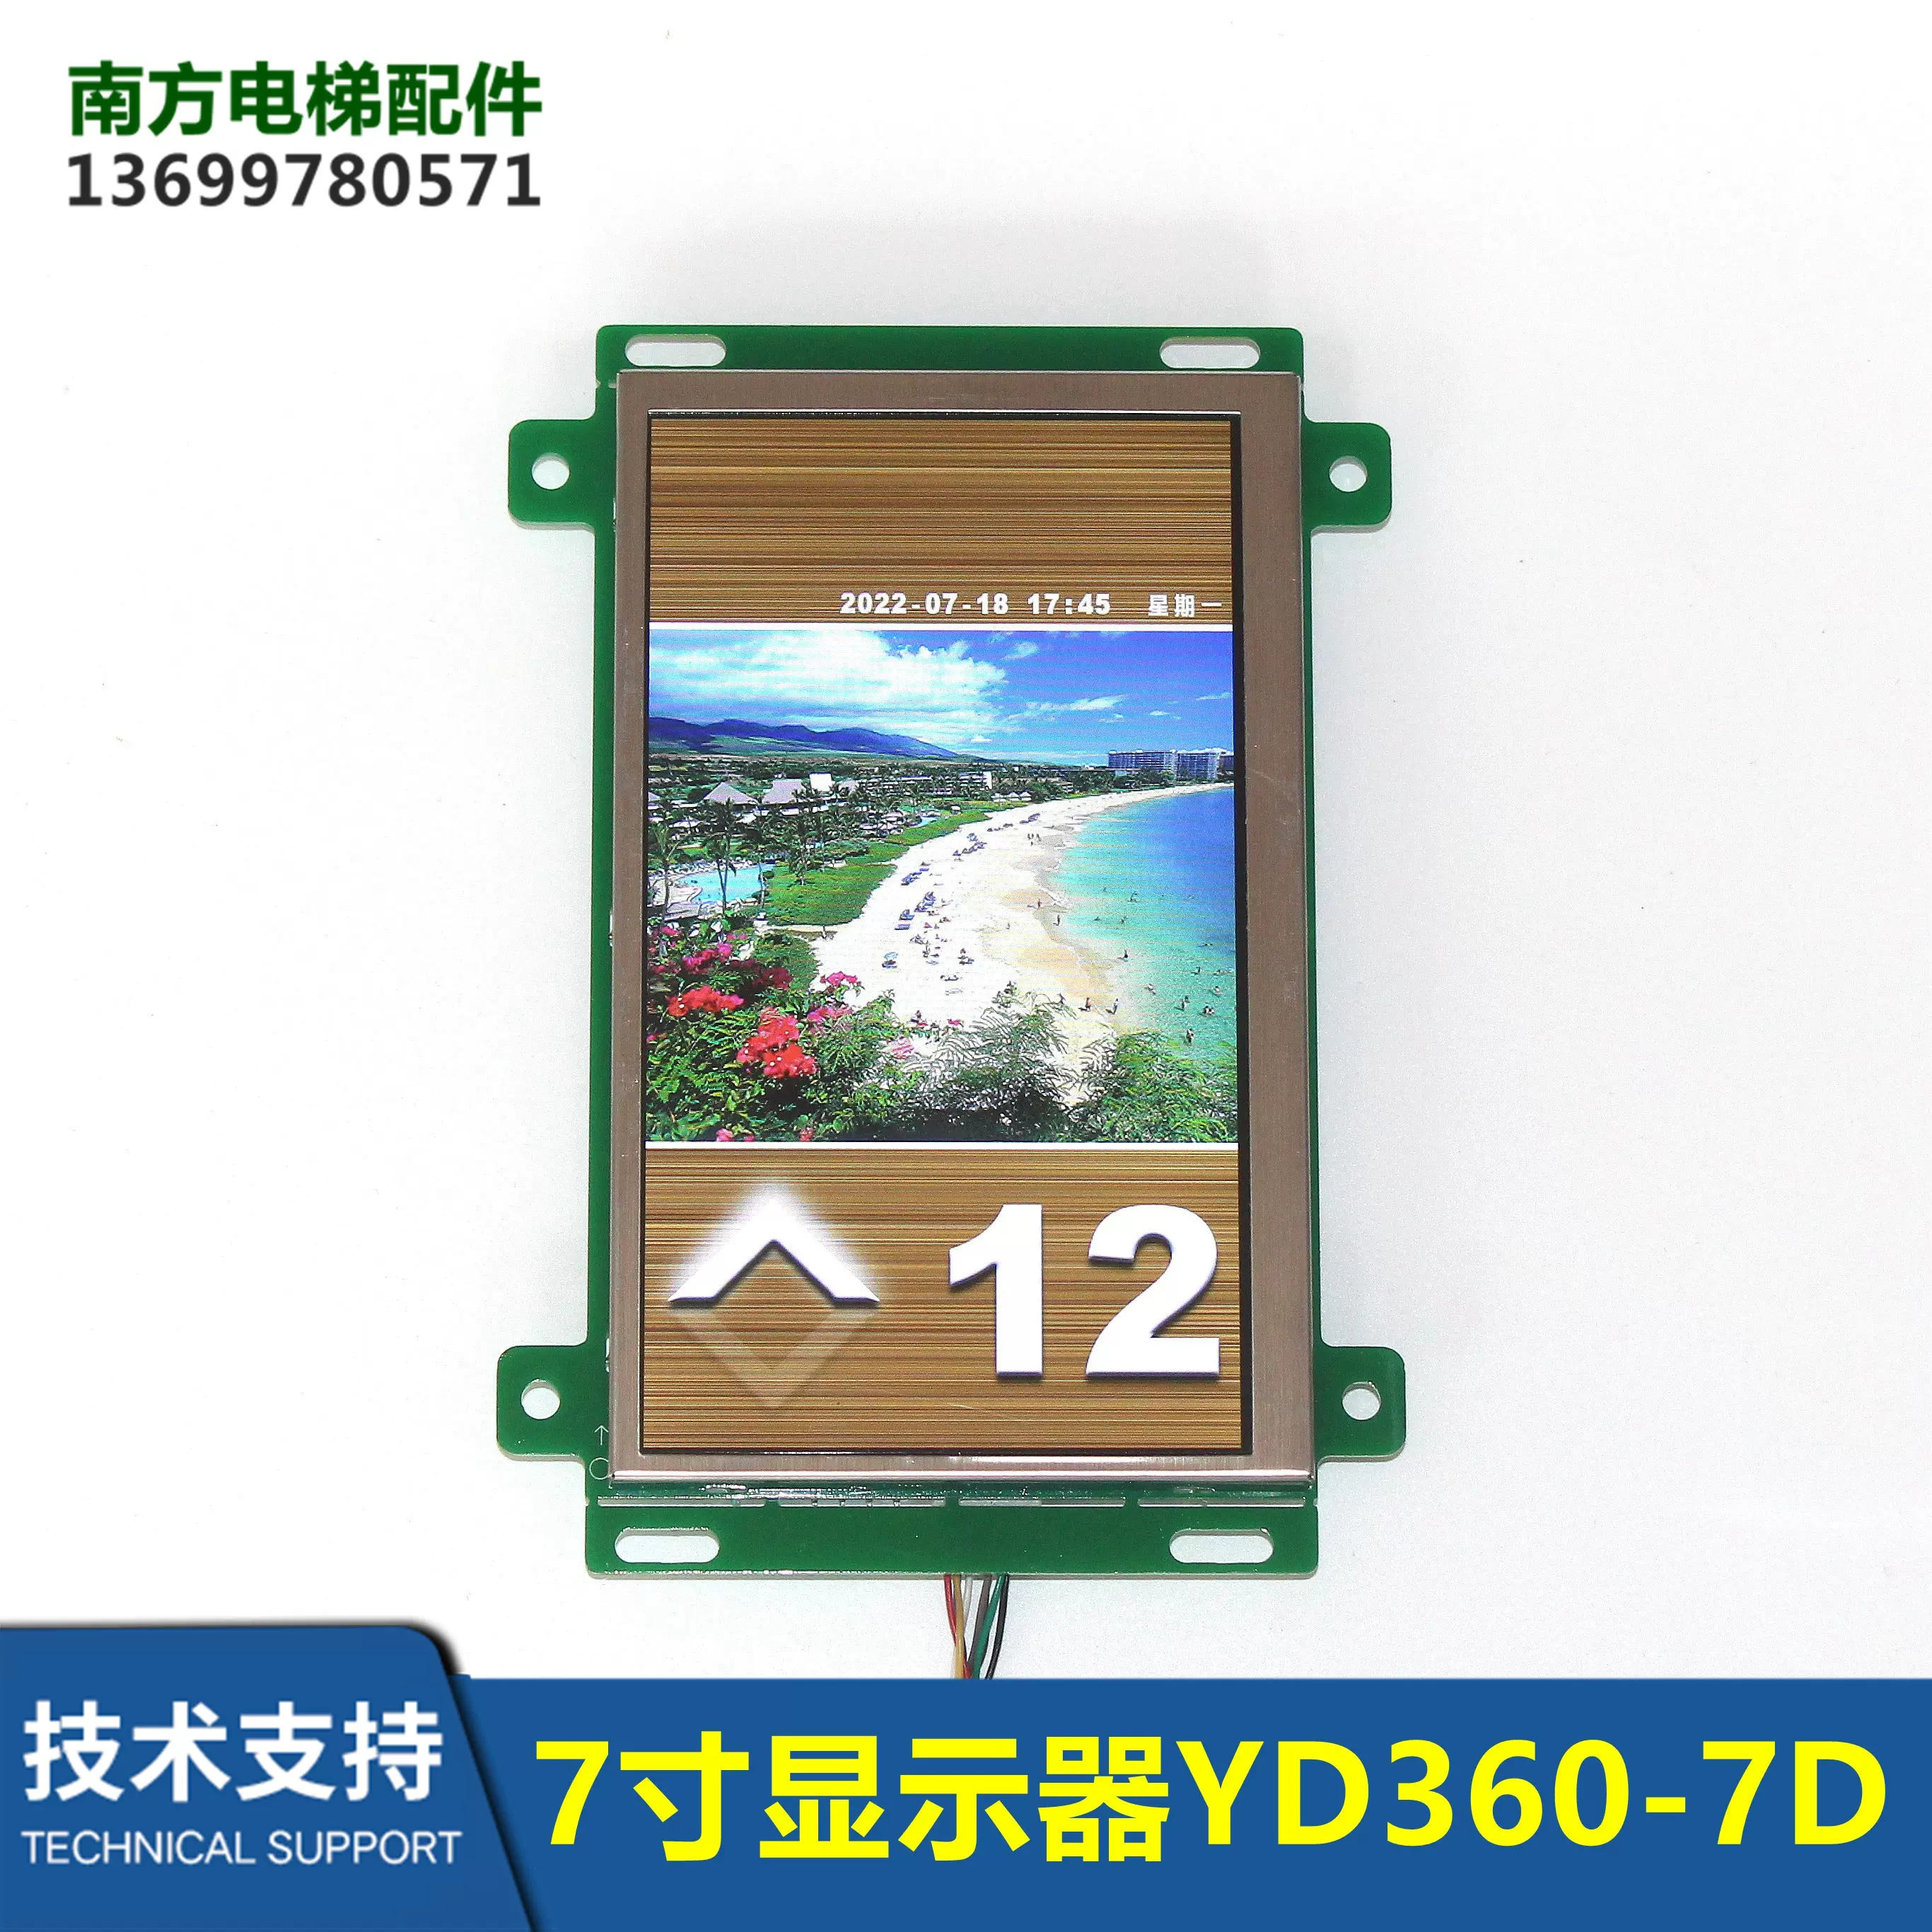 默纳克轿内液晶显示板7寸图片机YD360-7D广东铃木FFA-YD360-7B 7A-Taobao